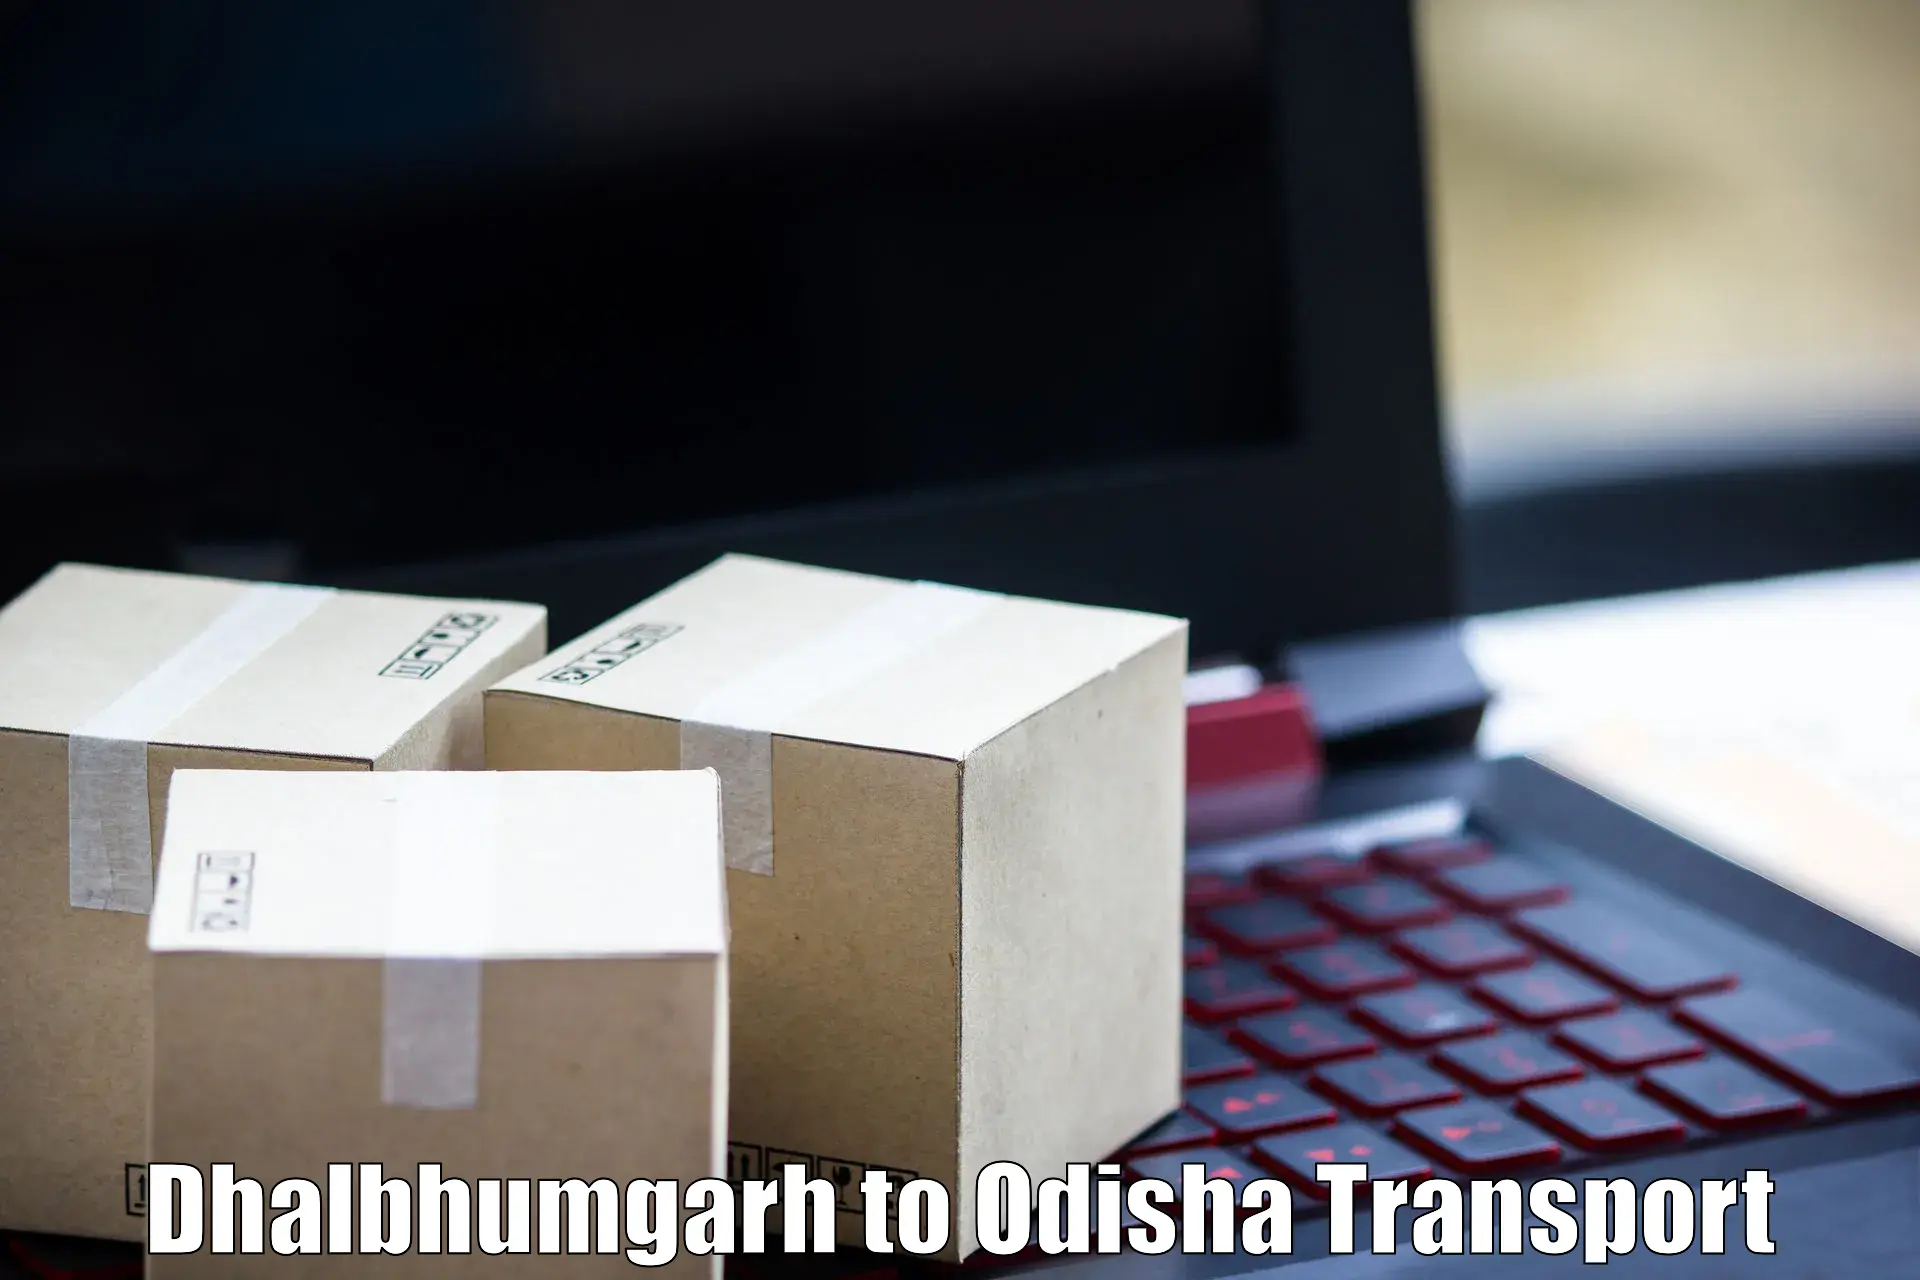 Container transport service Dhalbhumgarh to Parlakhemundi